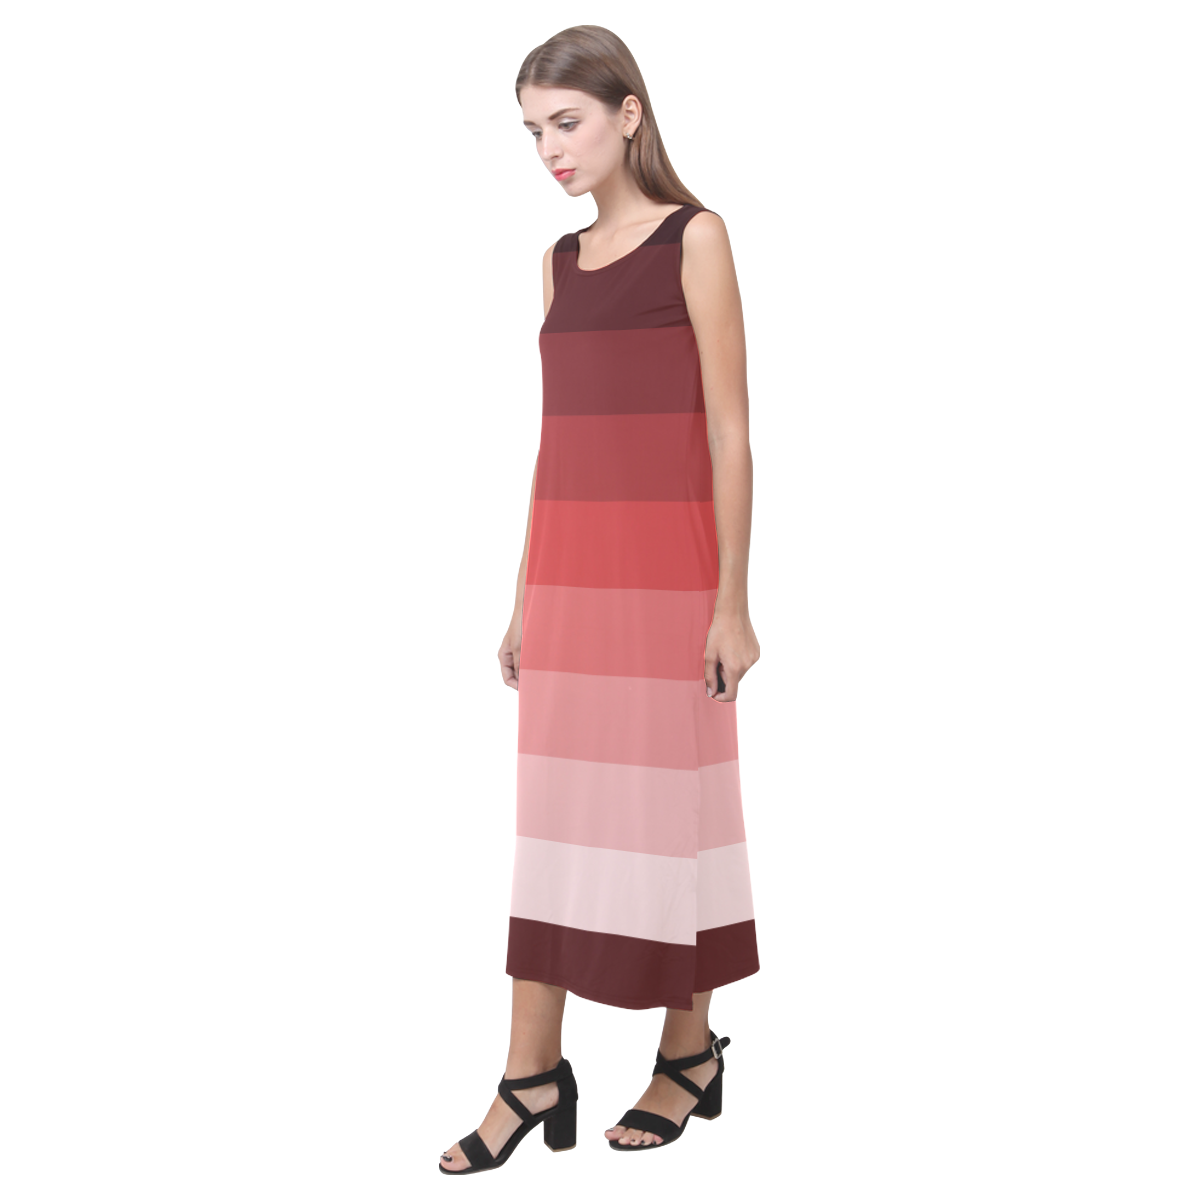 Copper multicolored stripes Phaedra Sleeveless Open Fork Long Dress (Model D08)